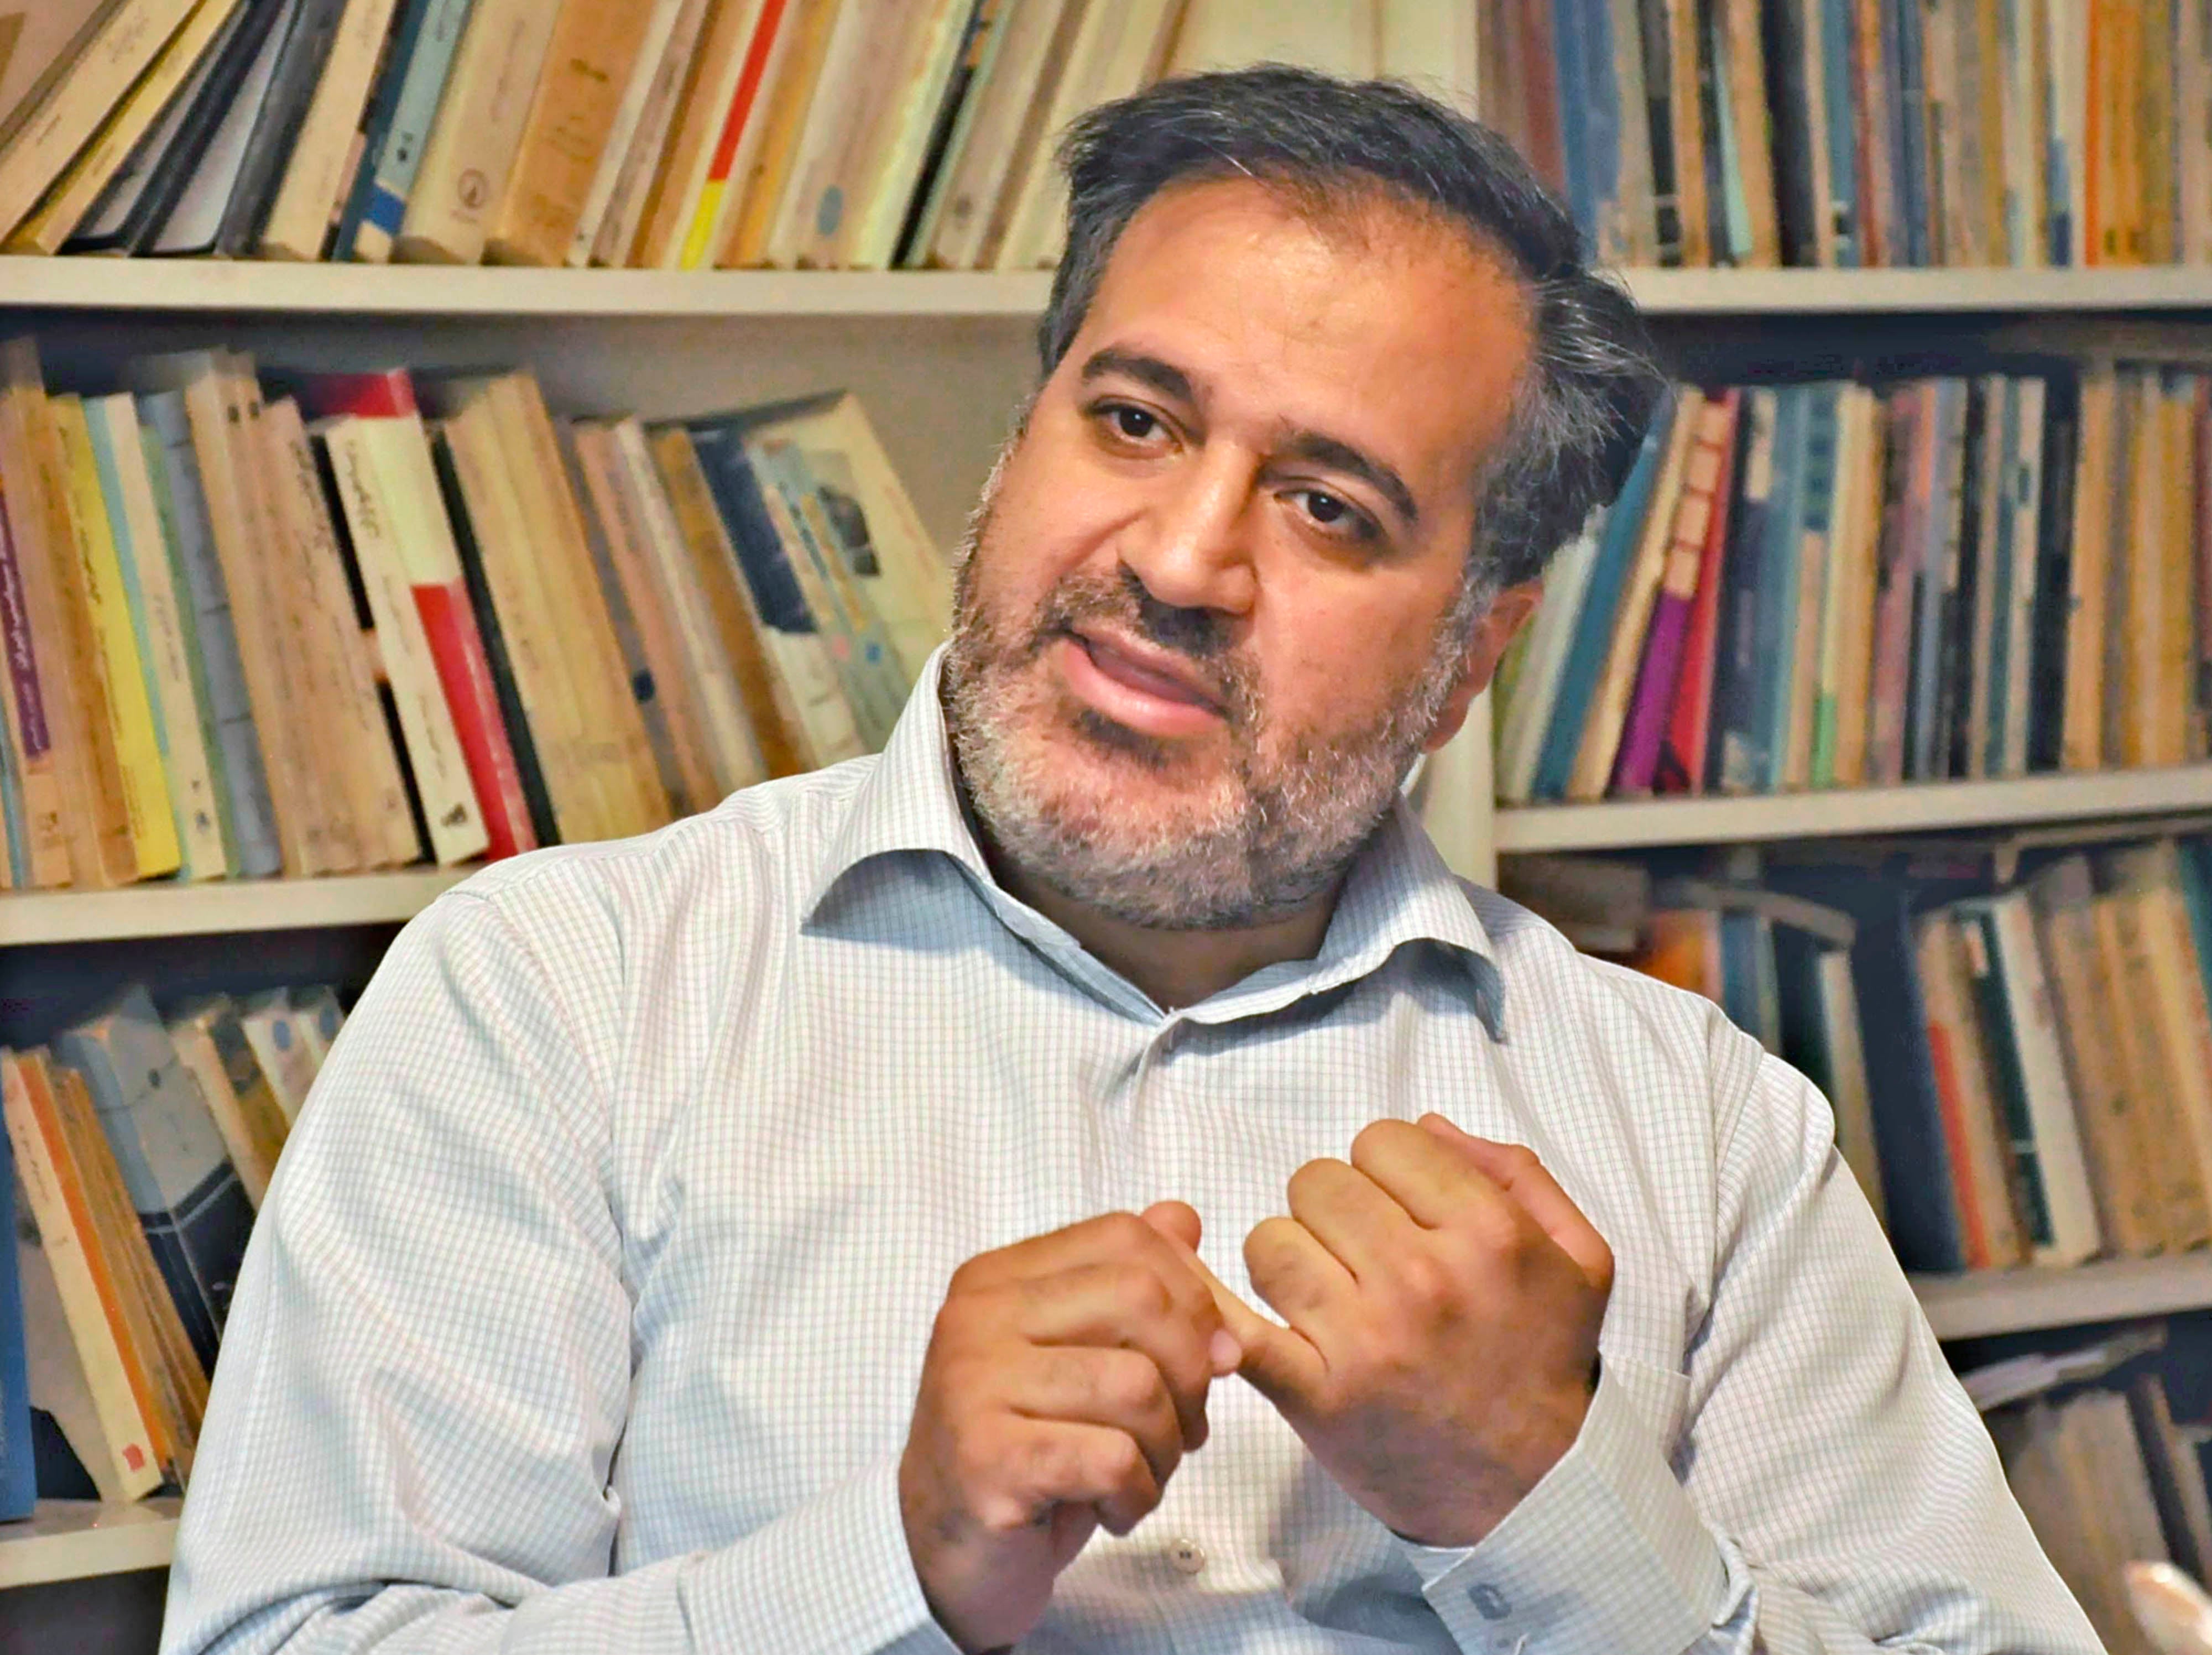 Mehdi Mahmoudian